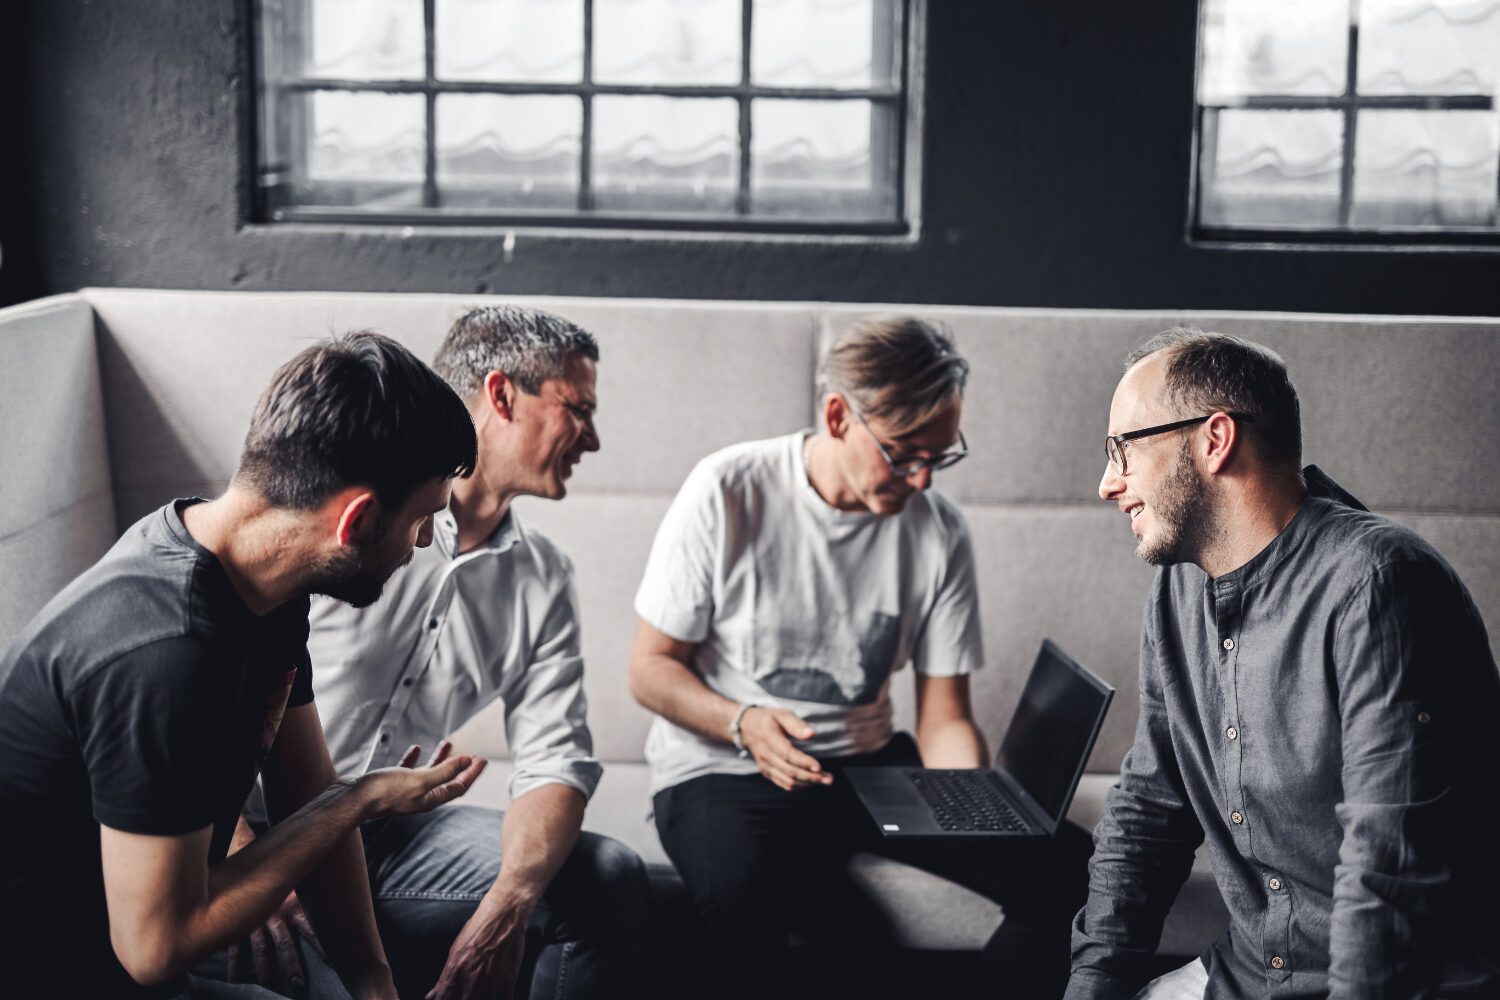 Vier valantic Austria Mitarbeiter sitzen zusammen um einen Laptop und diskutieren eine neue Produktstrategie für einen Kunden.